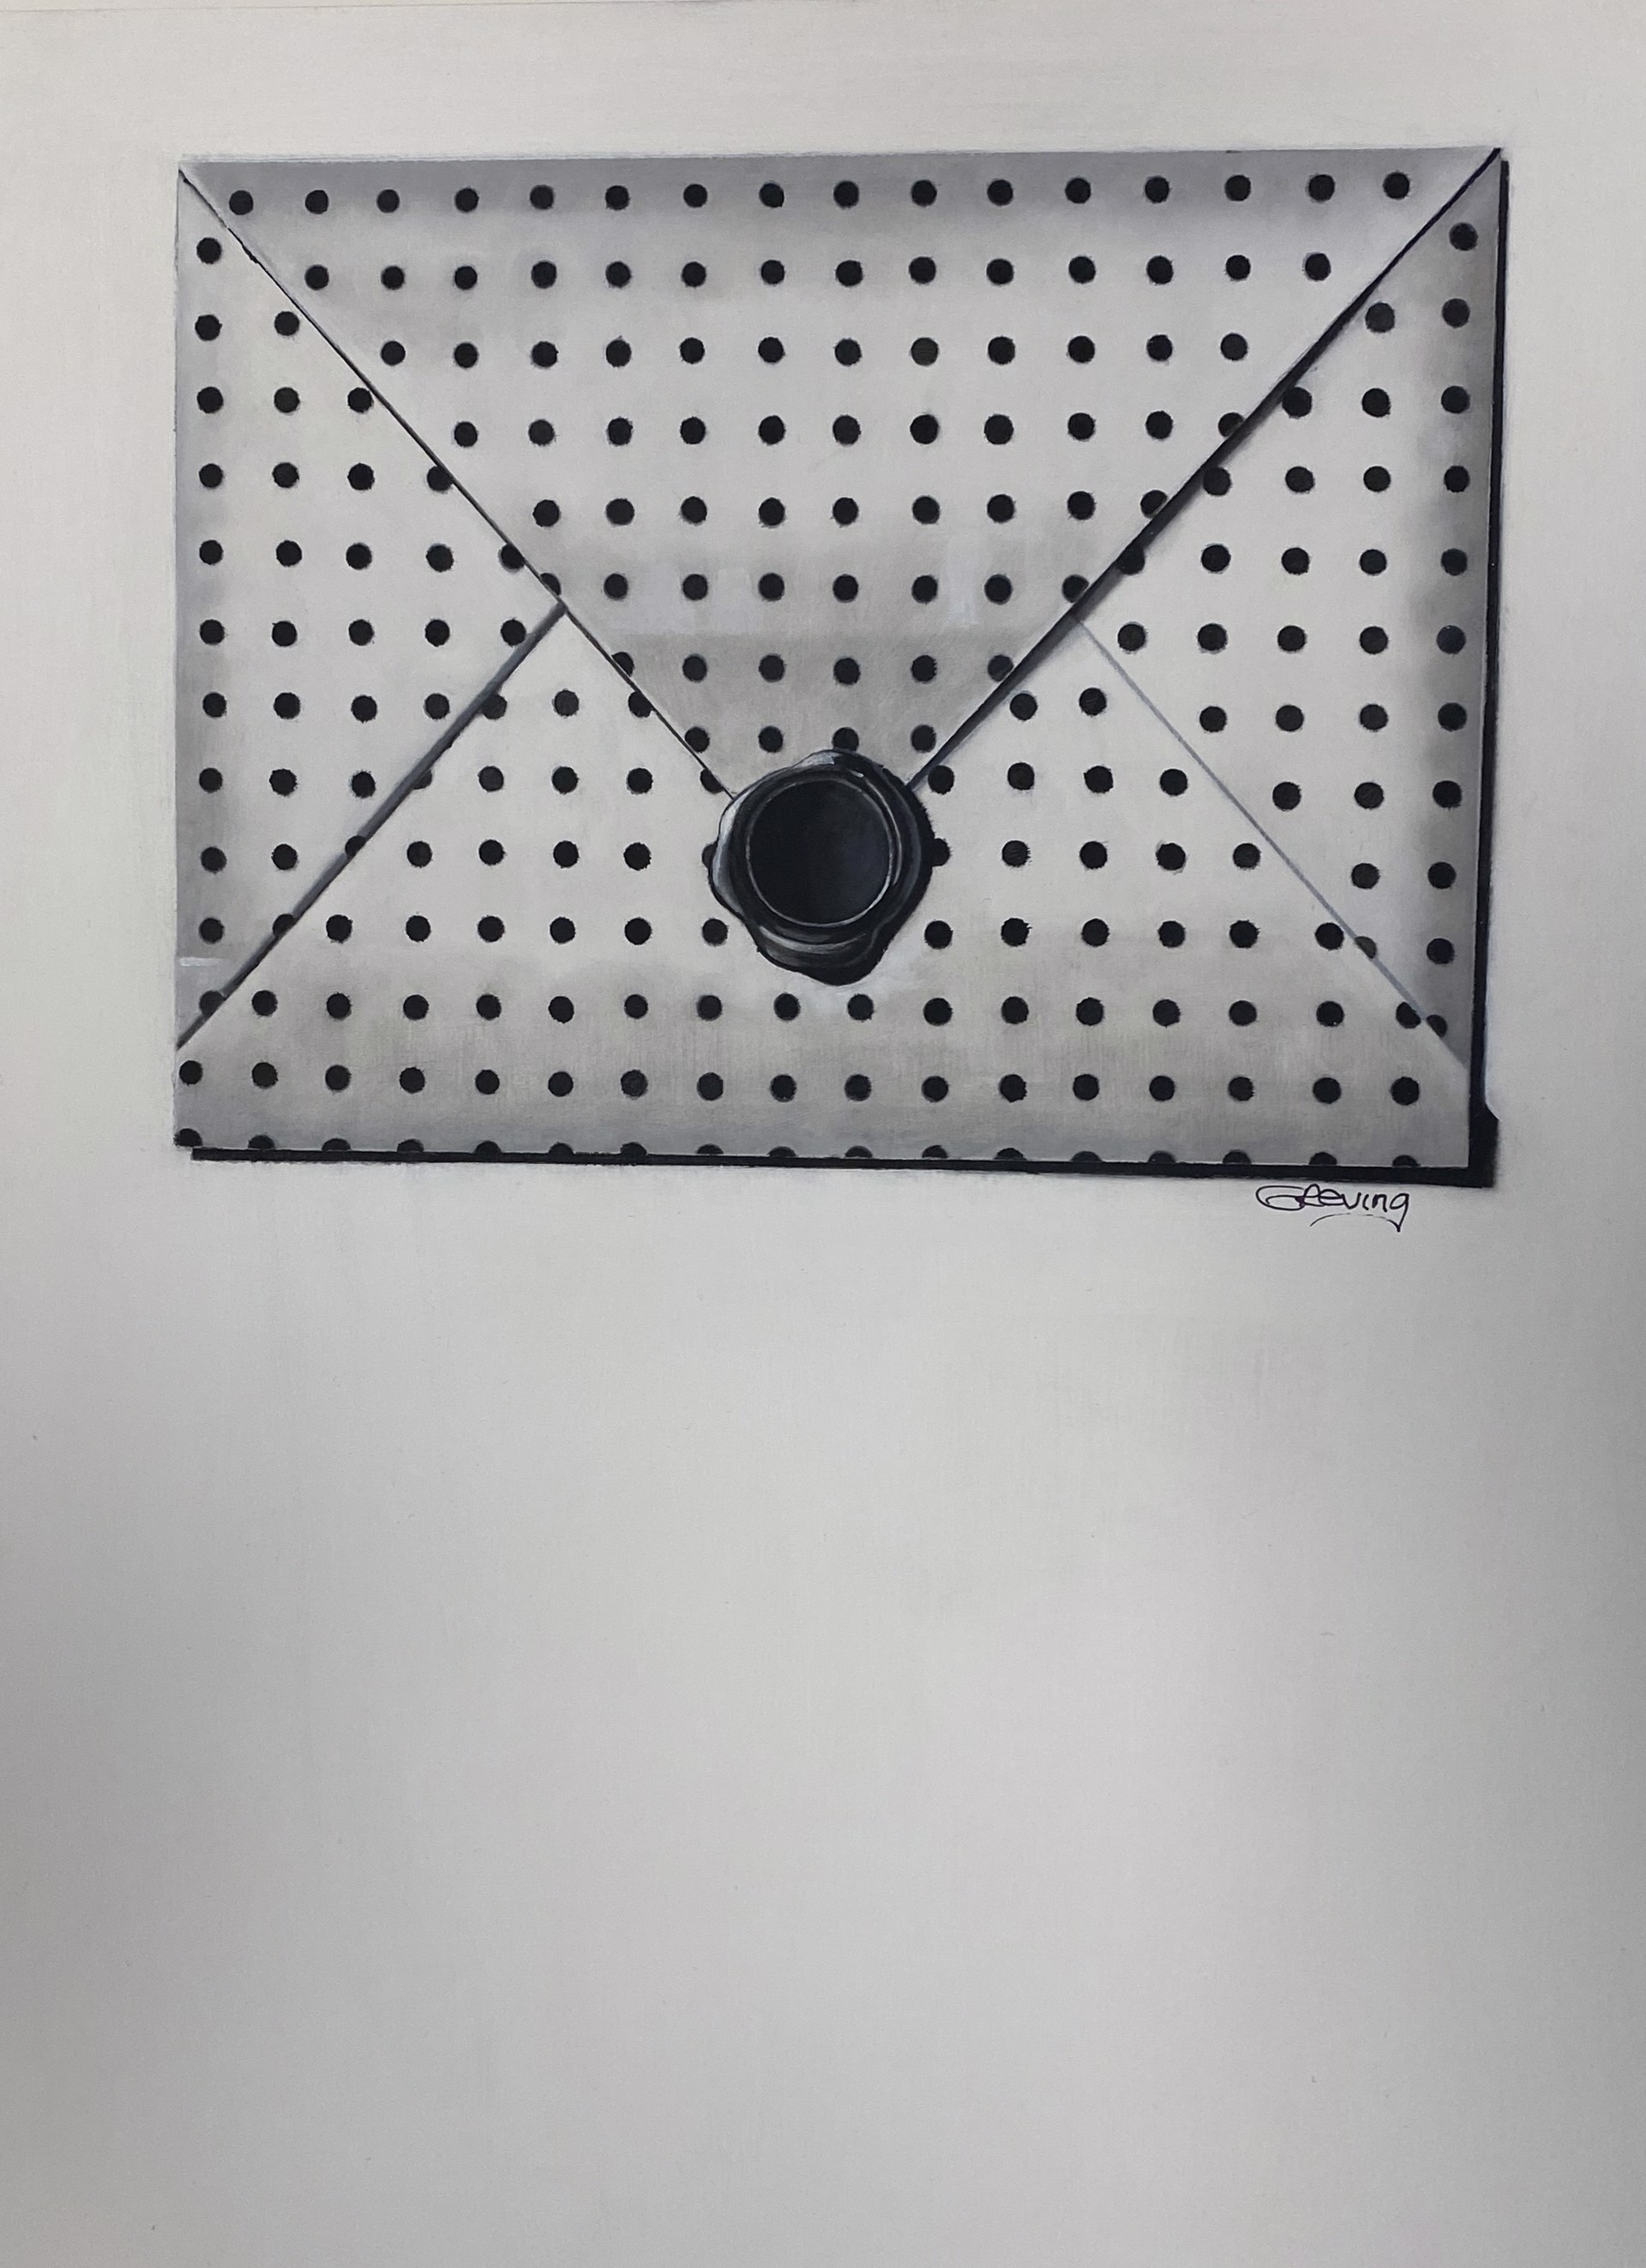 Black Polka Dots by Barbara Greving